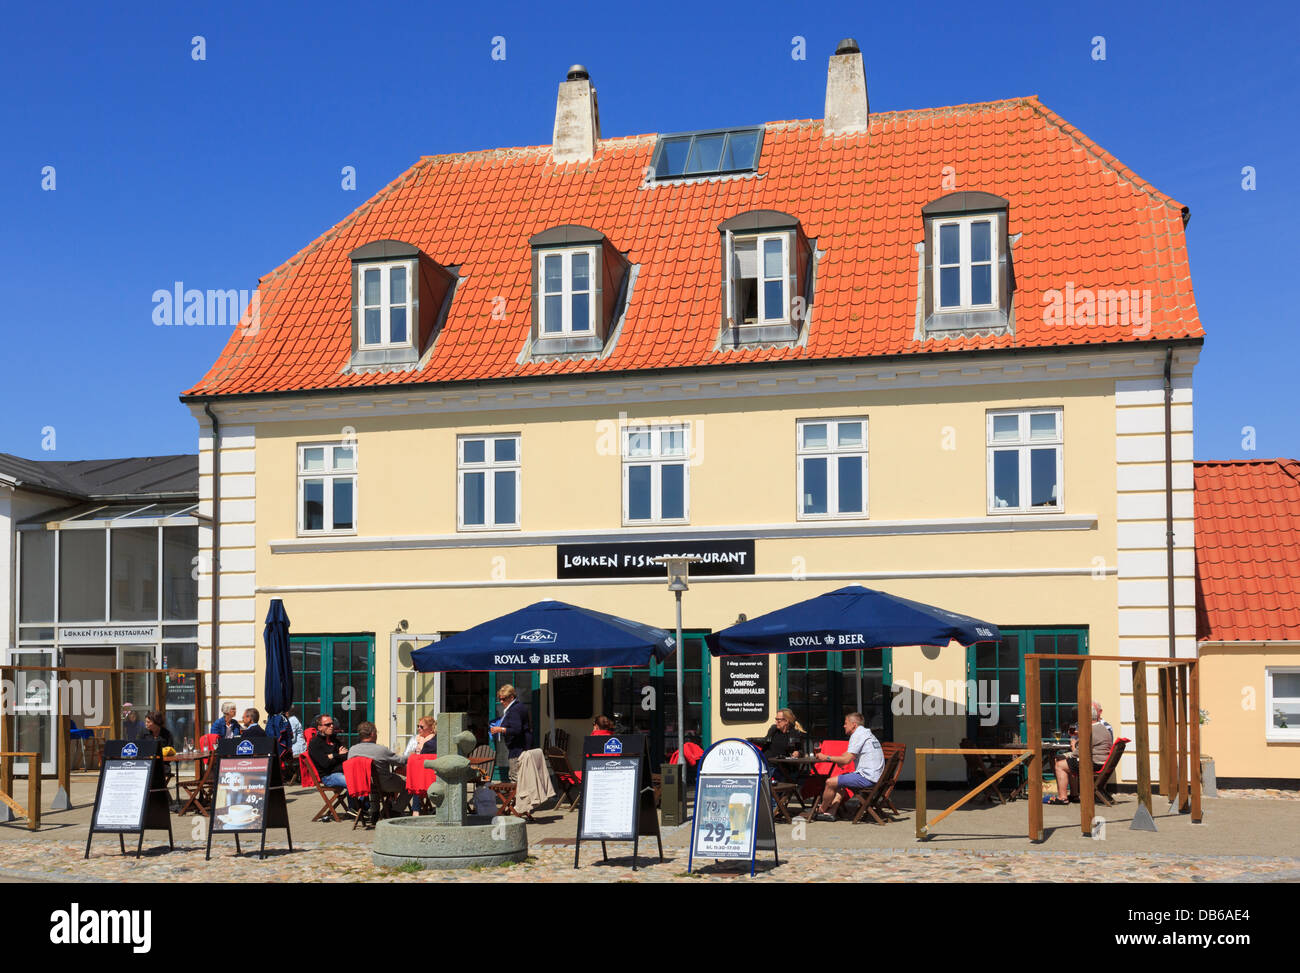 People dining outside the Fiske-Restaurant (Fish Restaurant) in Lokken, North Jutland, Denmark Stock Photo